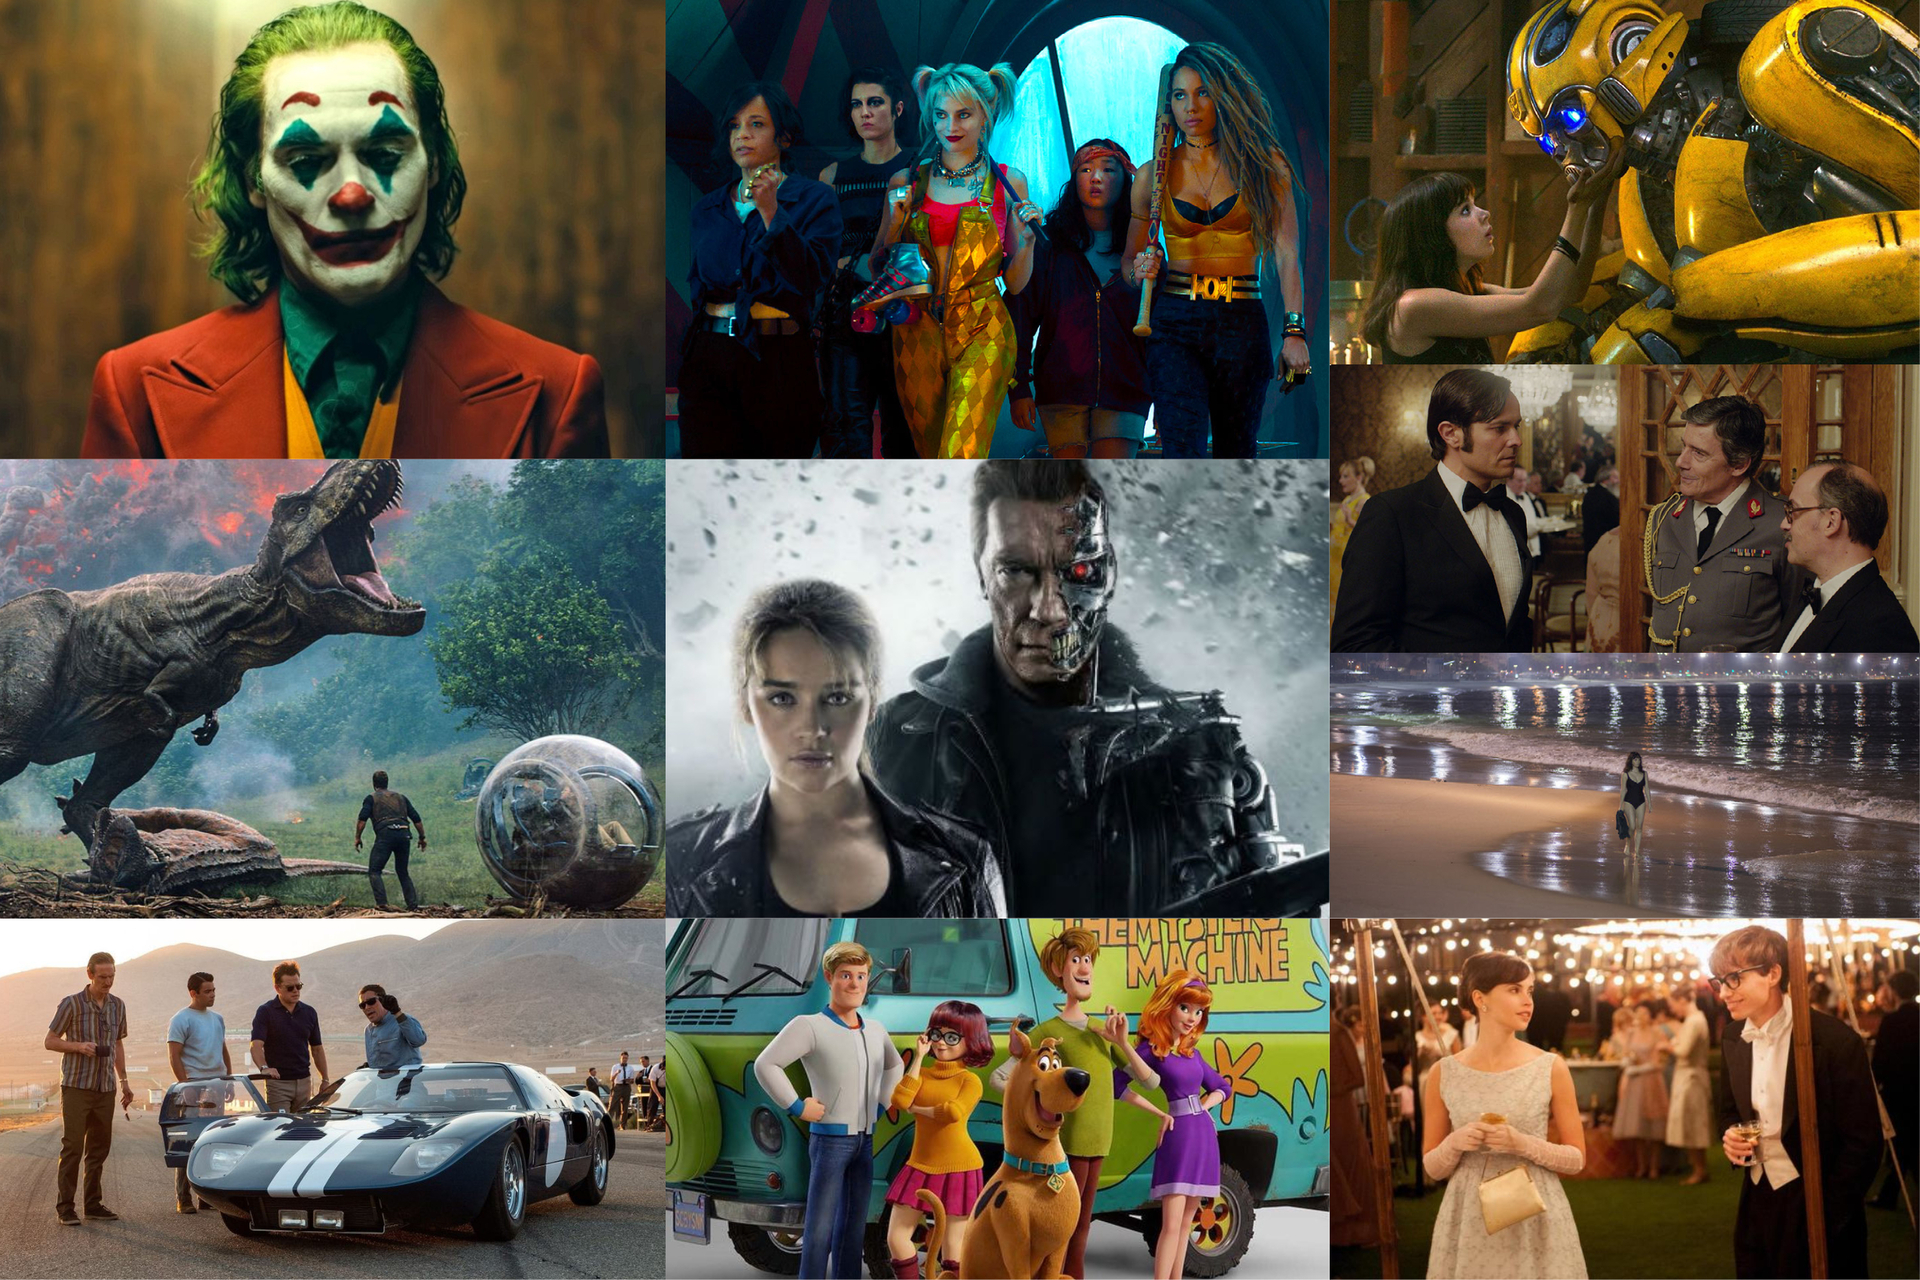 Cine Drive-In: confira os filmes em cartaz nesta semana